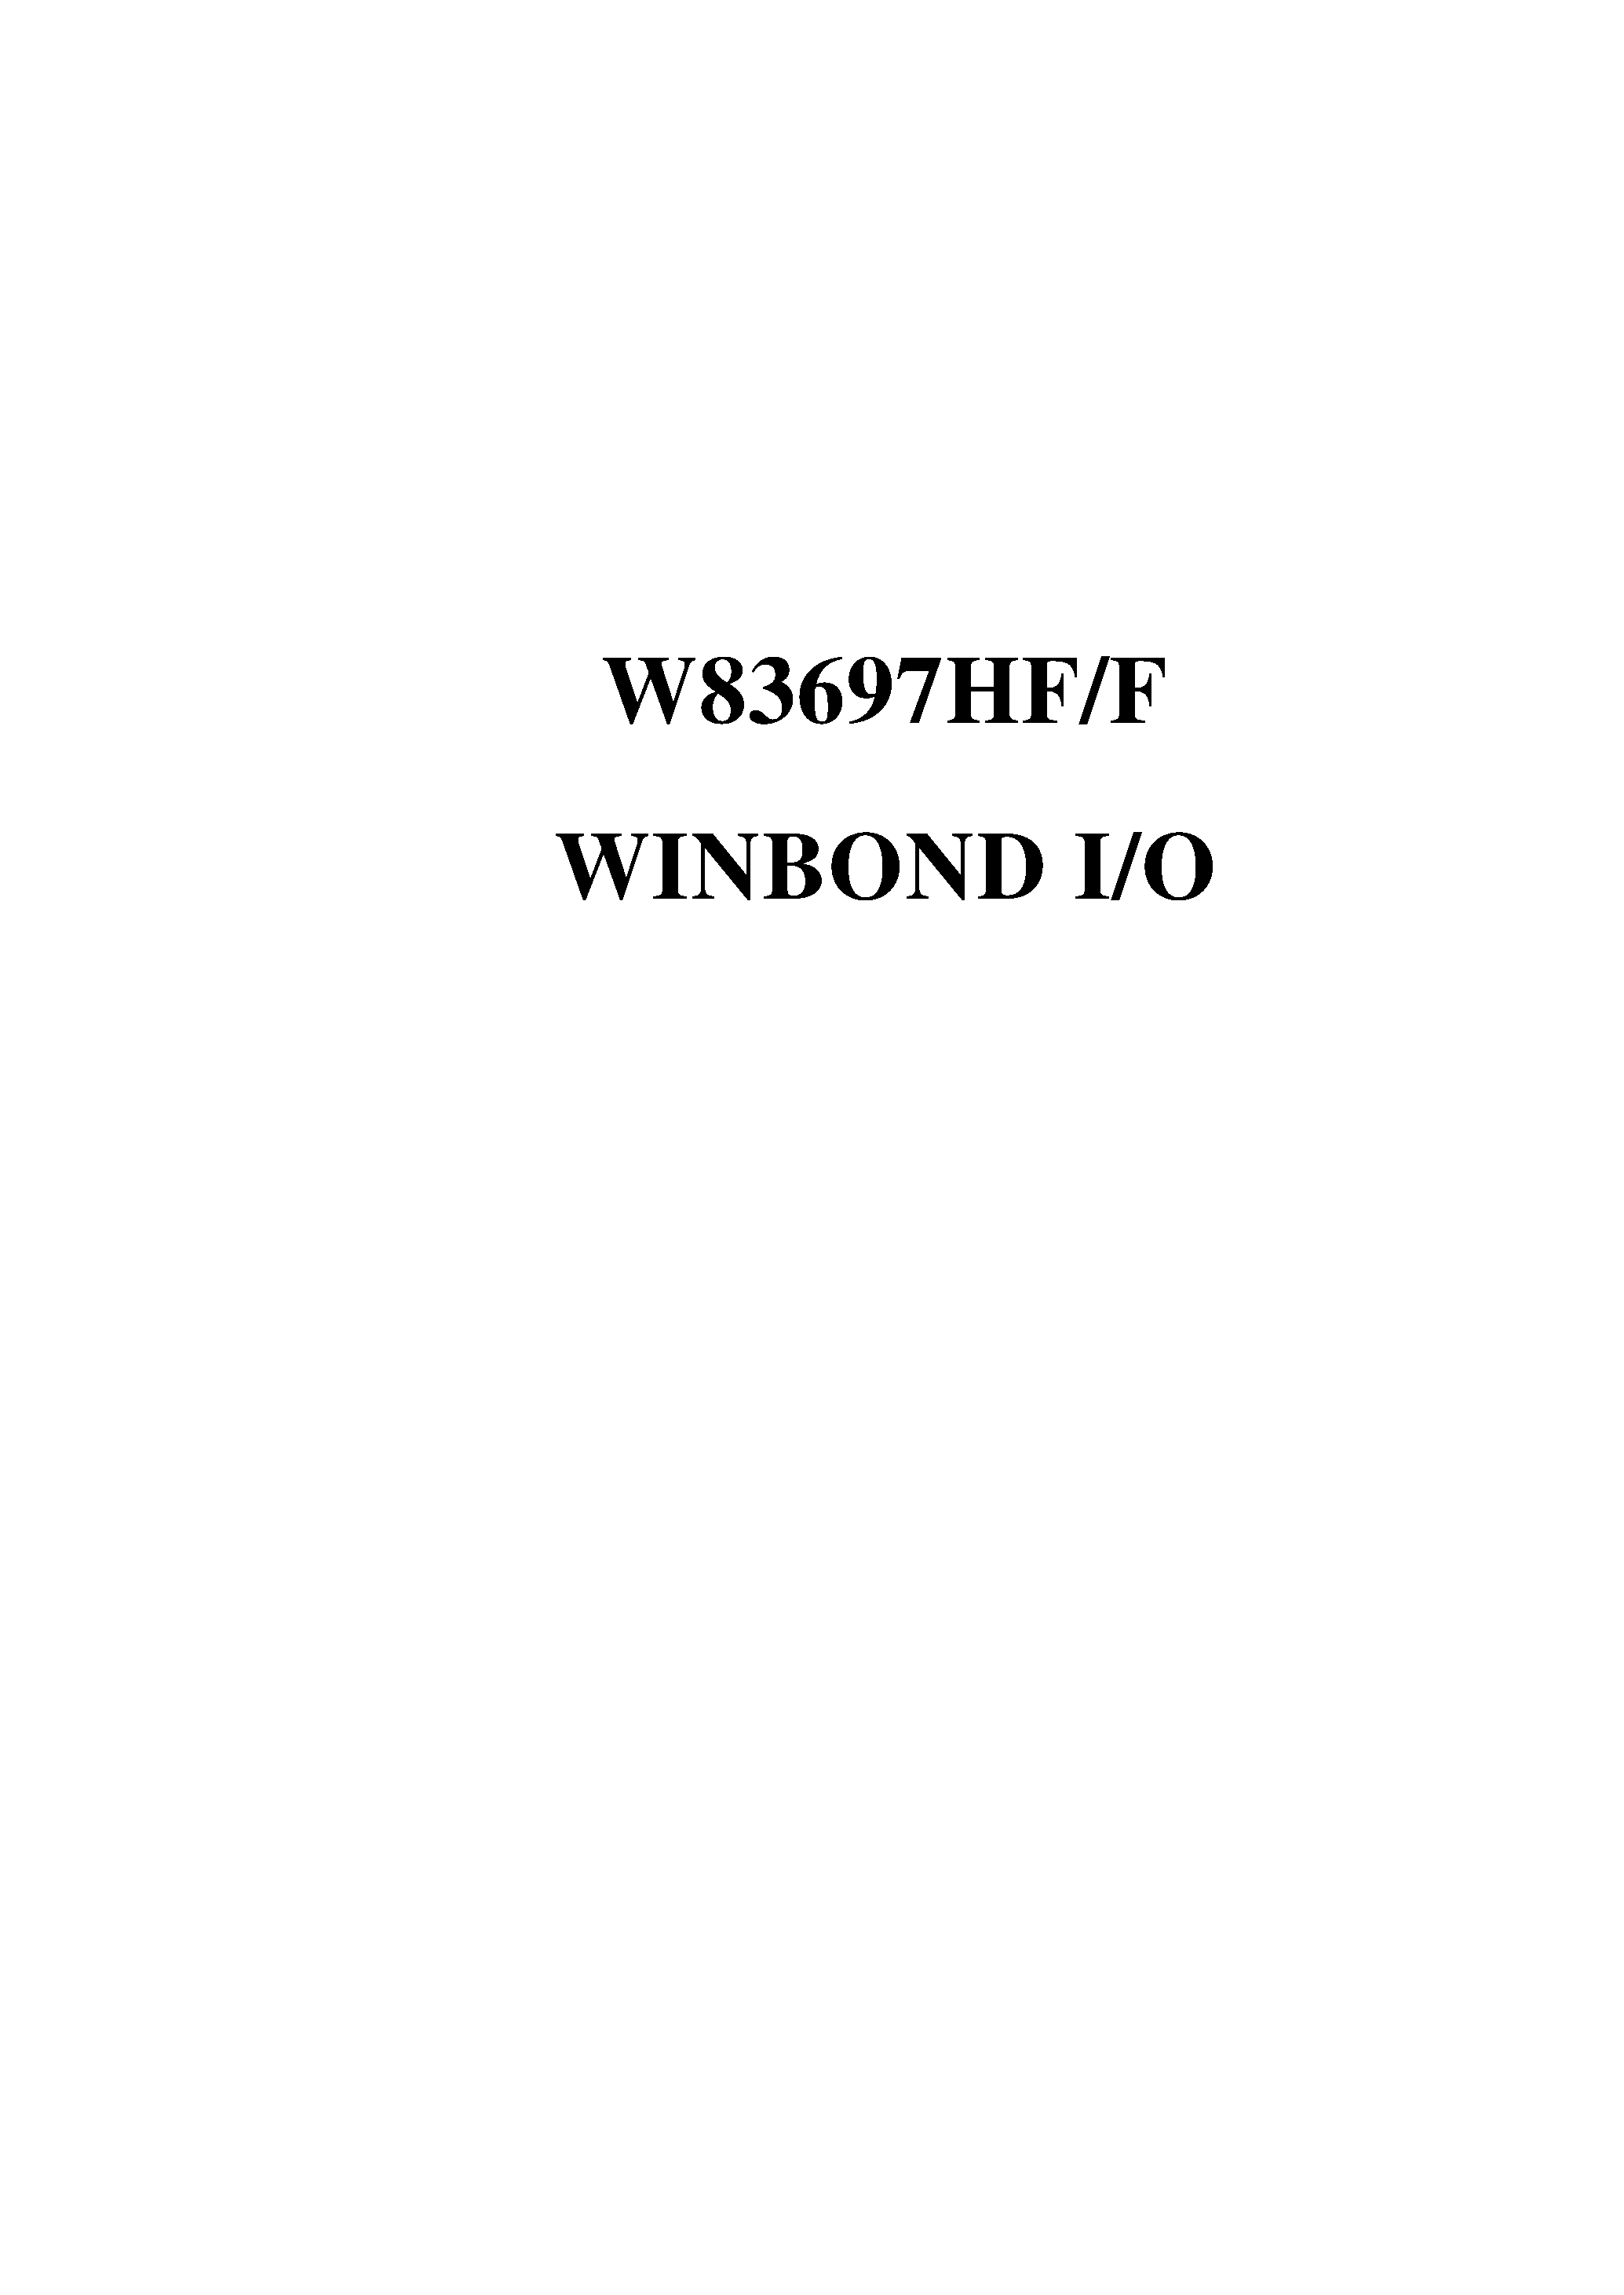 Datasheet W83697SF - WINBOND I/O page 1